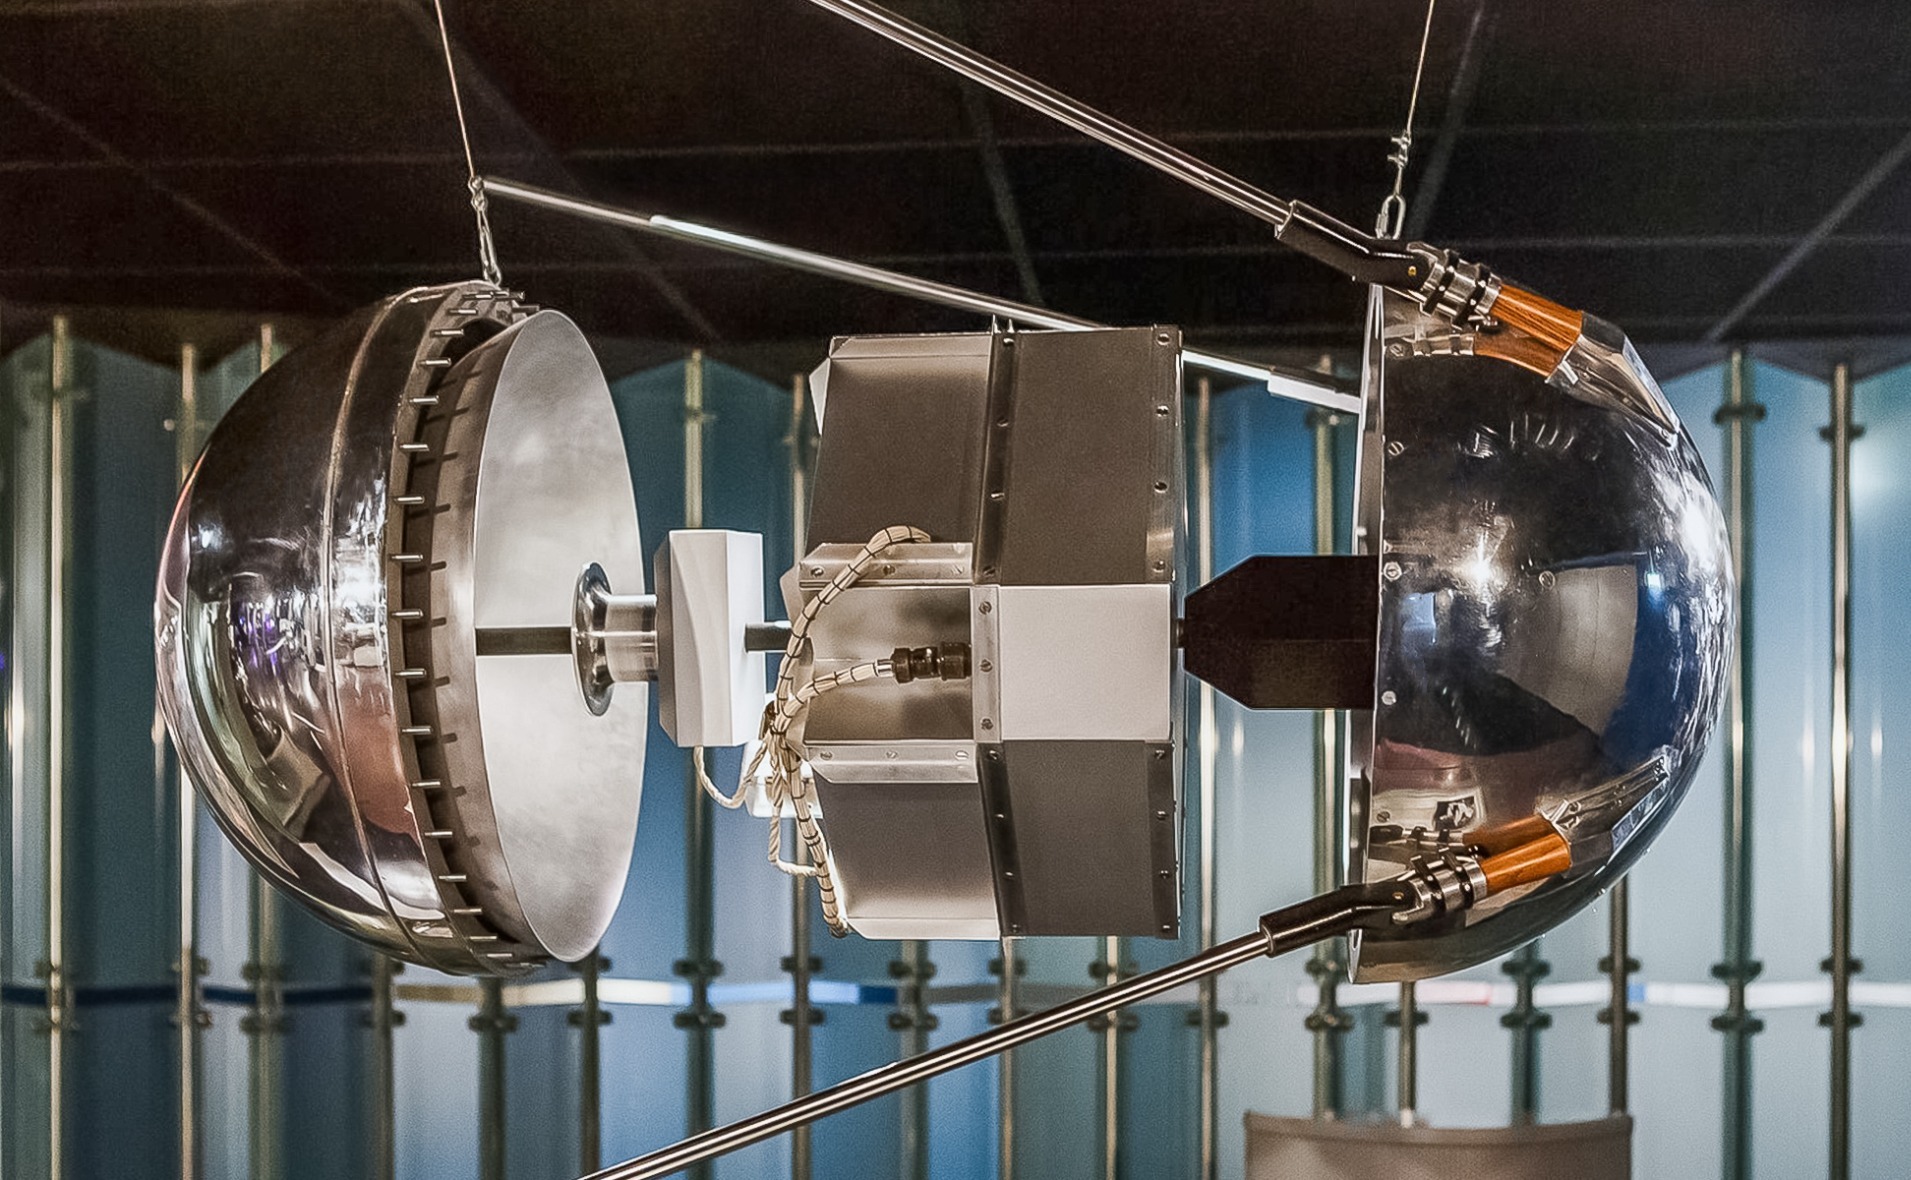 1957 первый в истории искусственный спутник. Спутник 1 первый искусственный Спутник земли. Первый Спутник 1957. ПС-1 Спутник. Первый ИСЗ "Спутник".